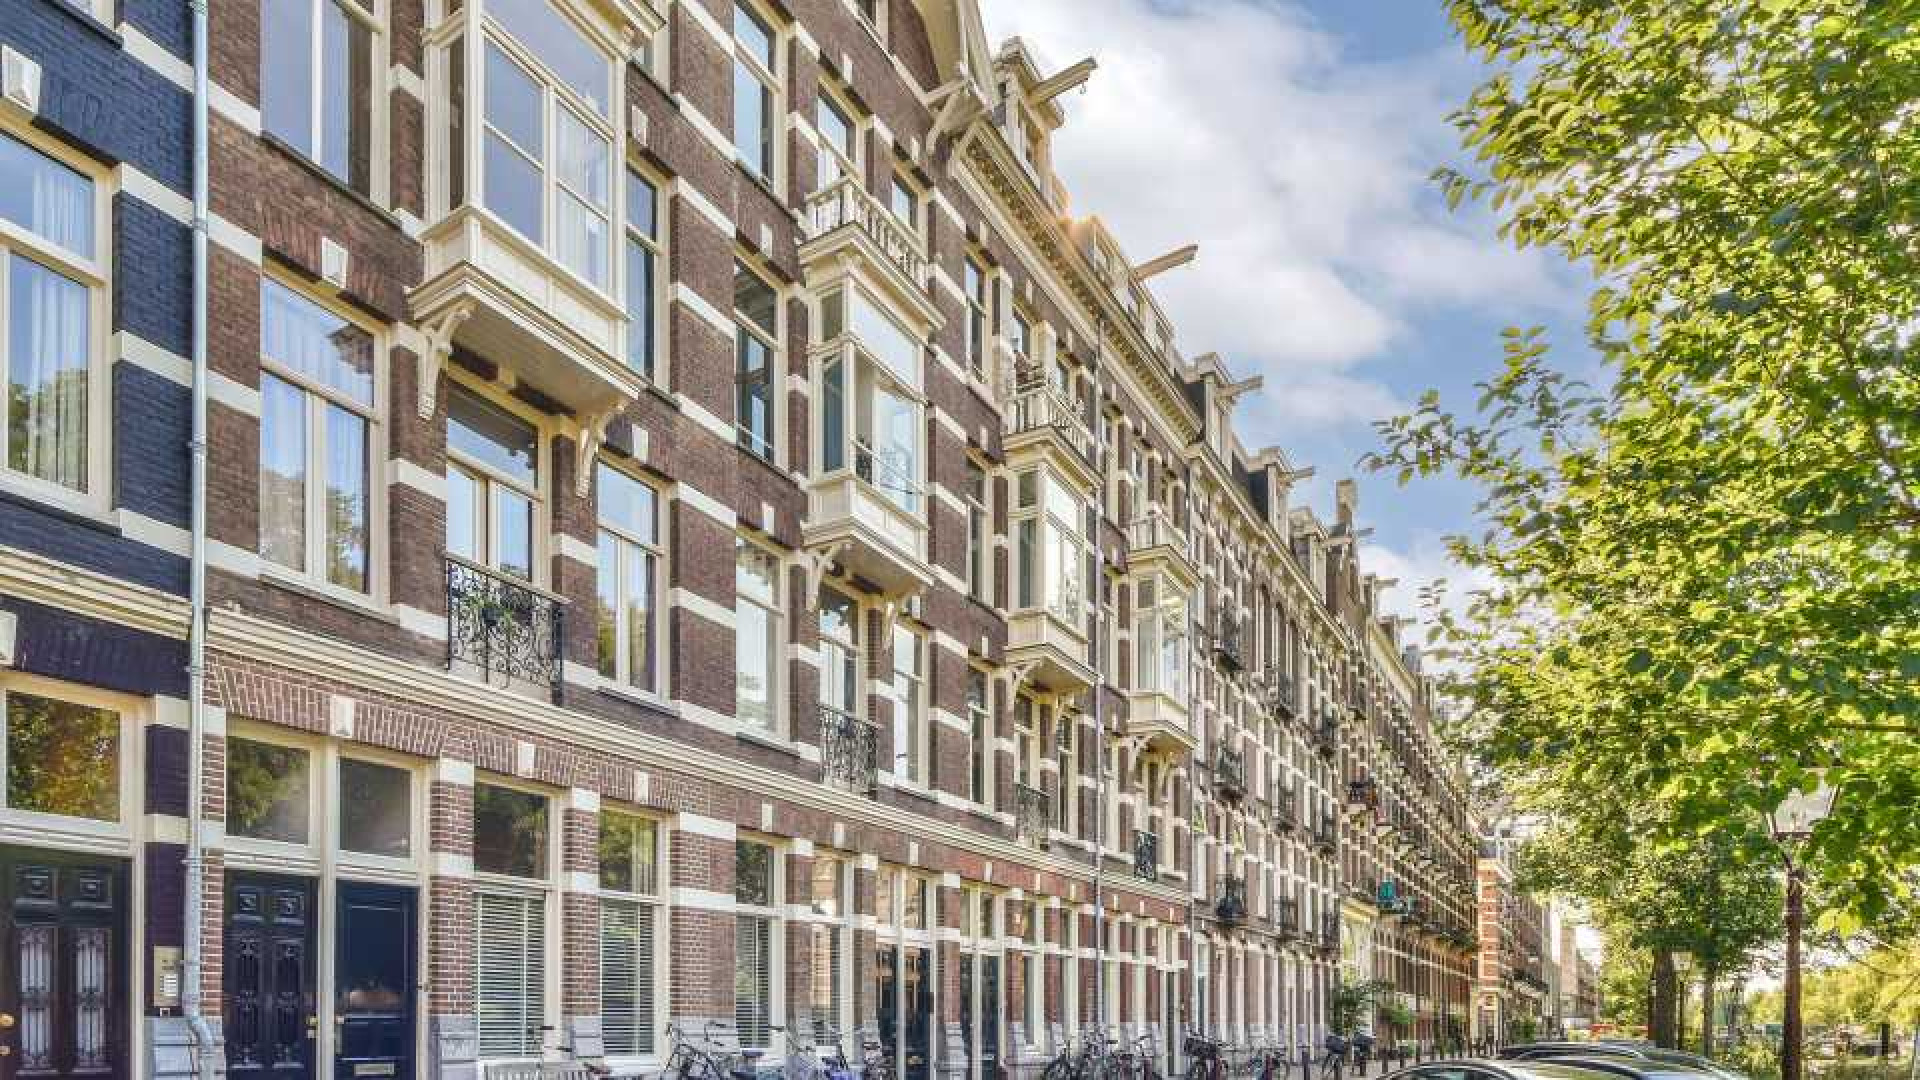 Lisa Vol van de groep OG3NE verruilt haar villa in Waspik voor grachtenappartement in Amsterdam. Zie foto's 2